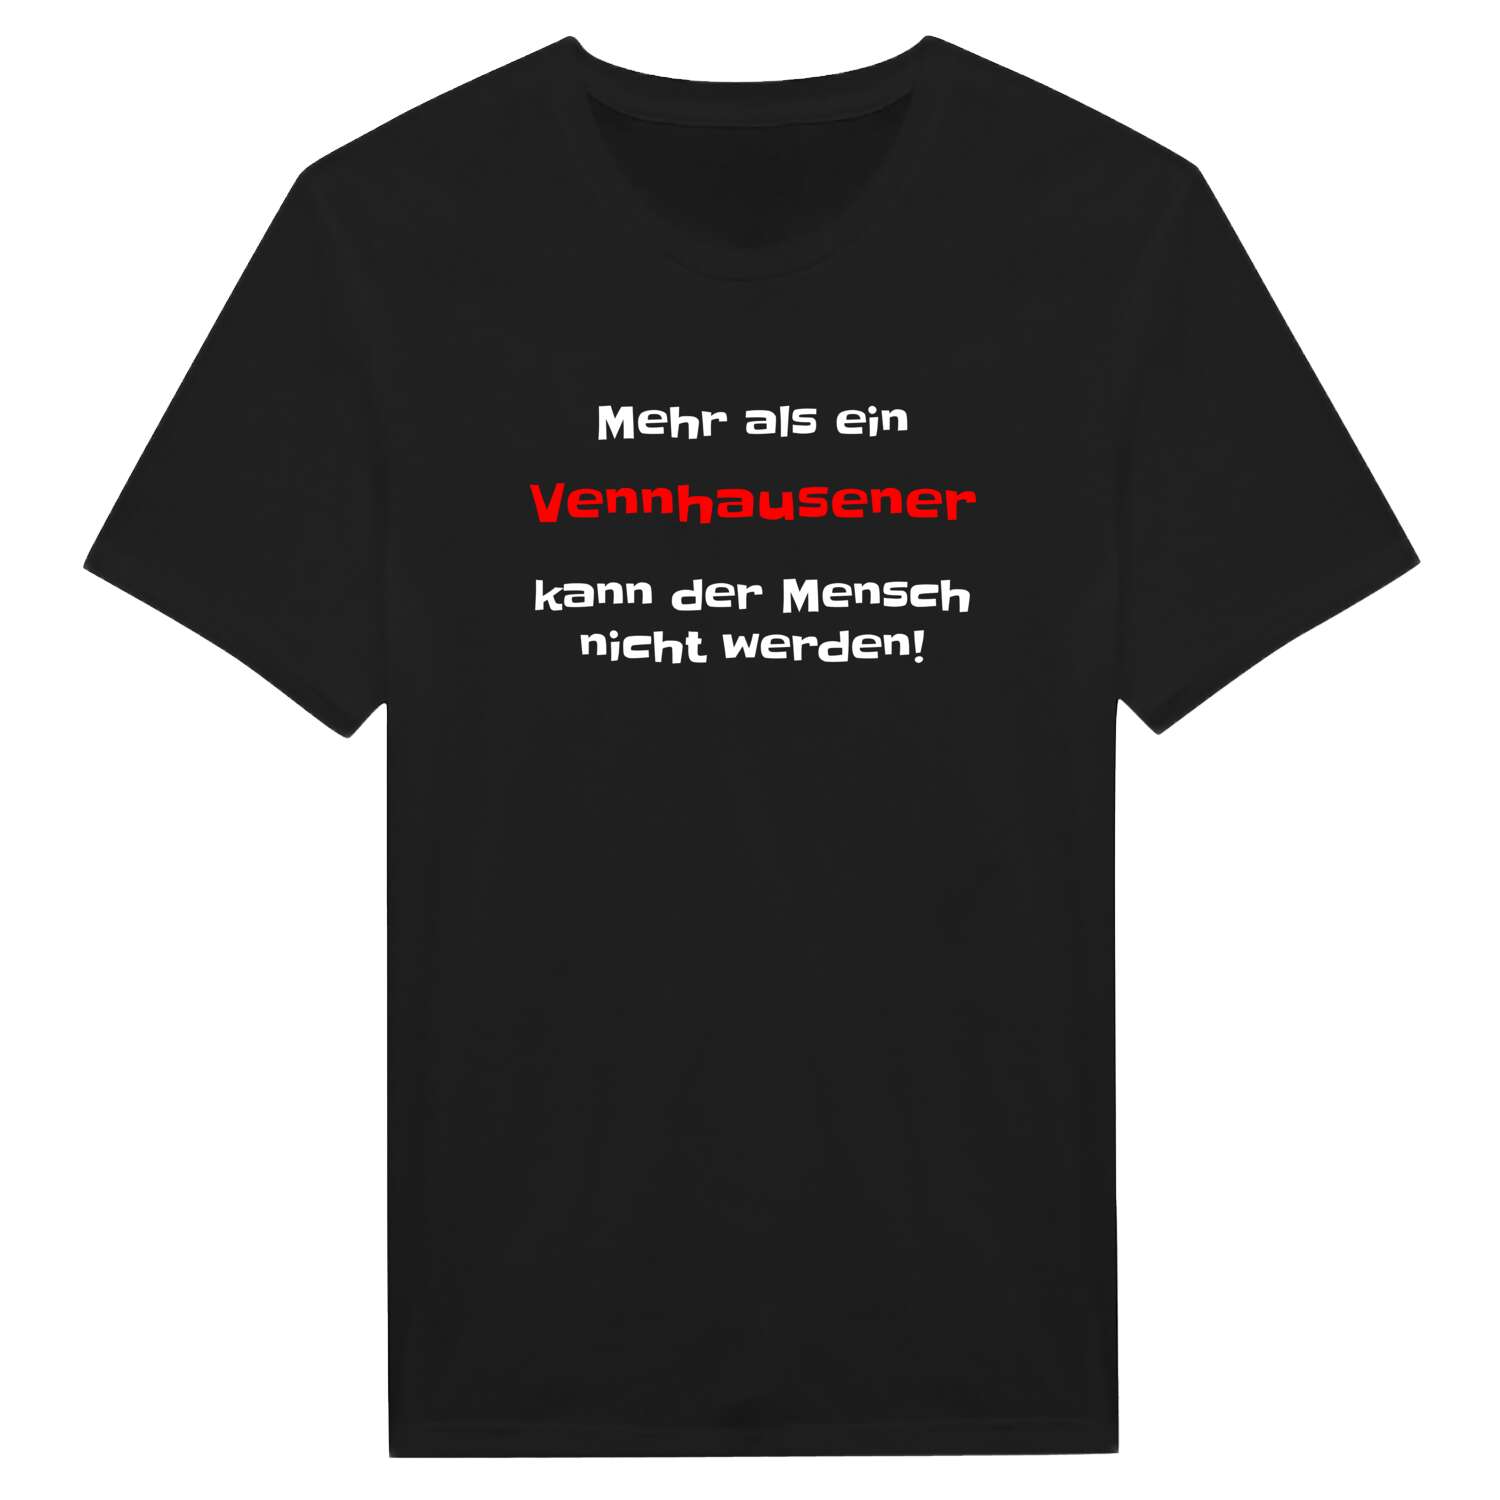 Vennhausen T-Shirt »Mehr als ein«